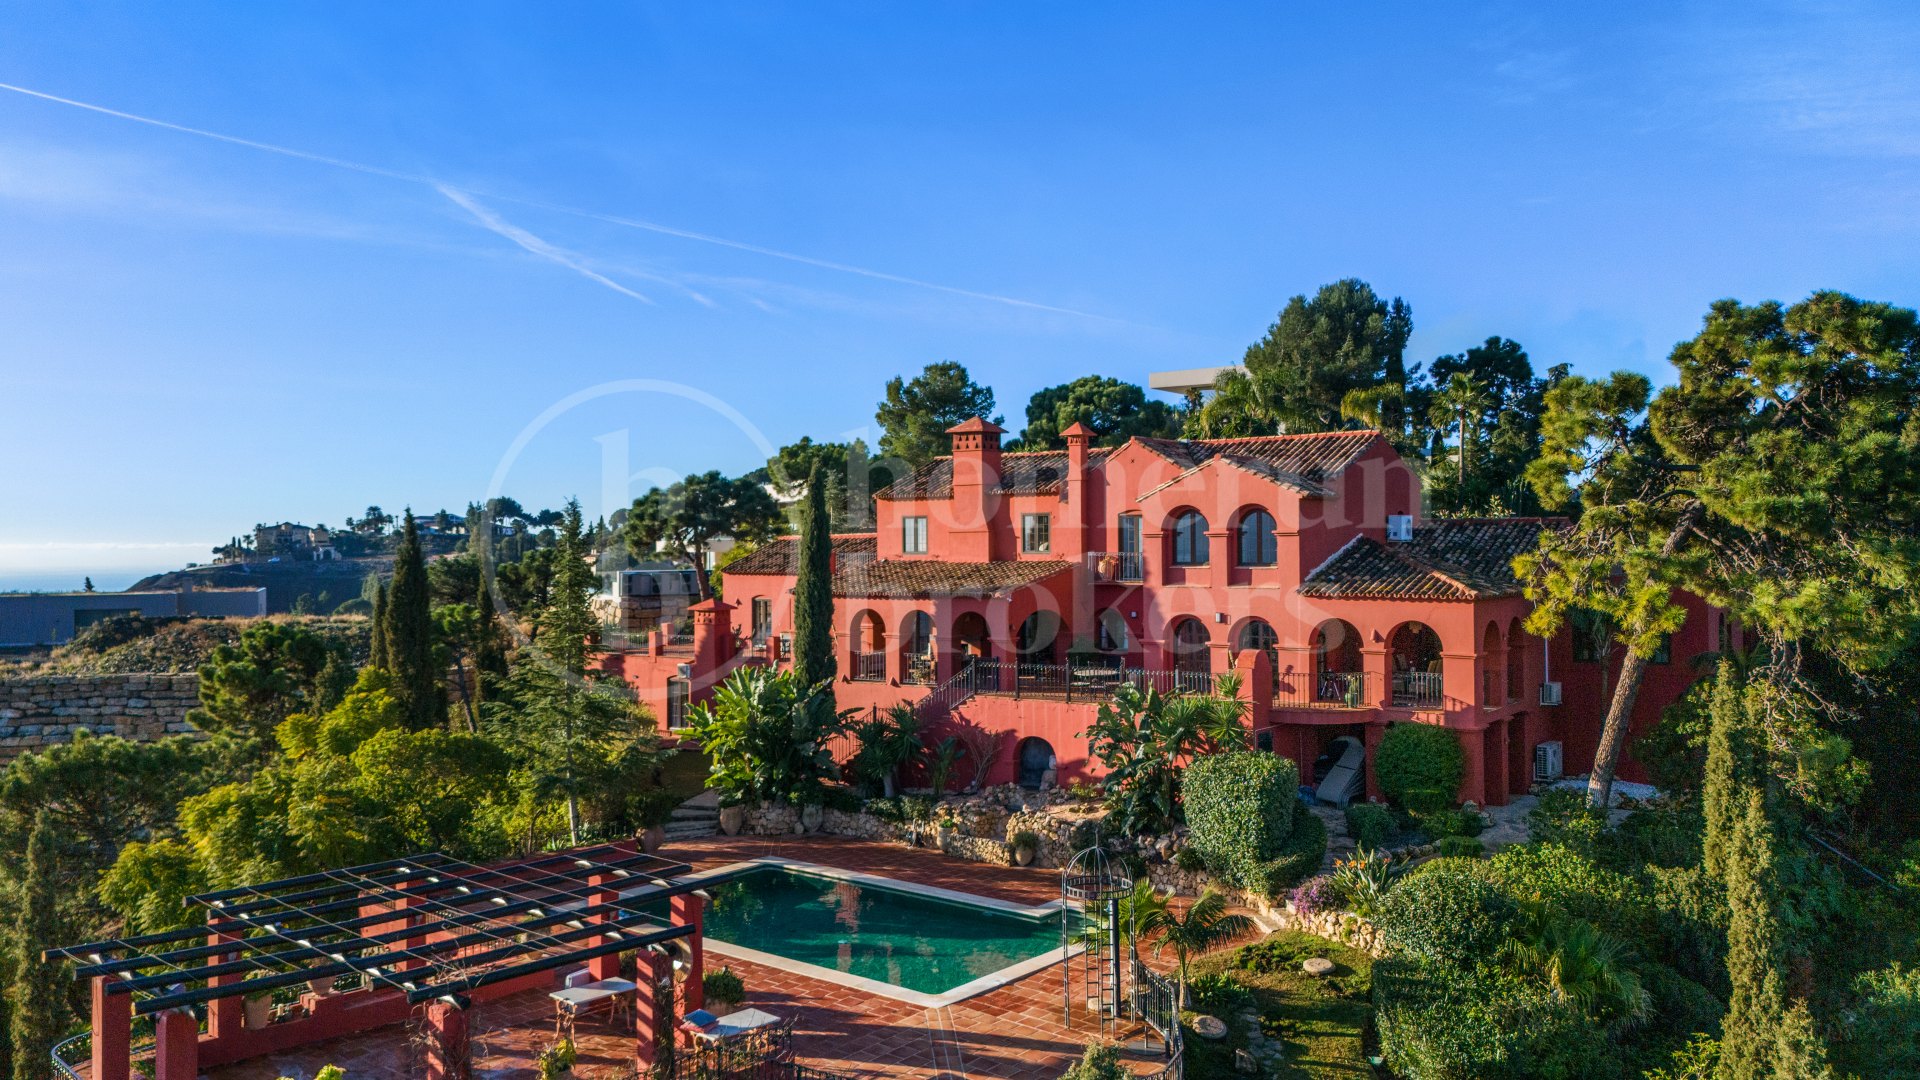 Casa Sardegna - Classica Mediterranean Villa in El Madroñal